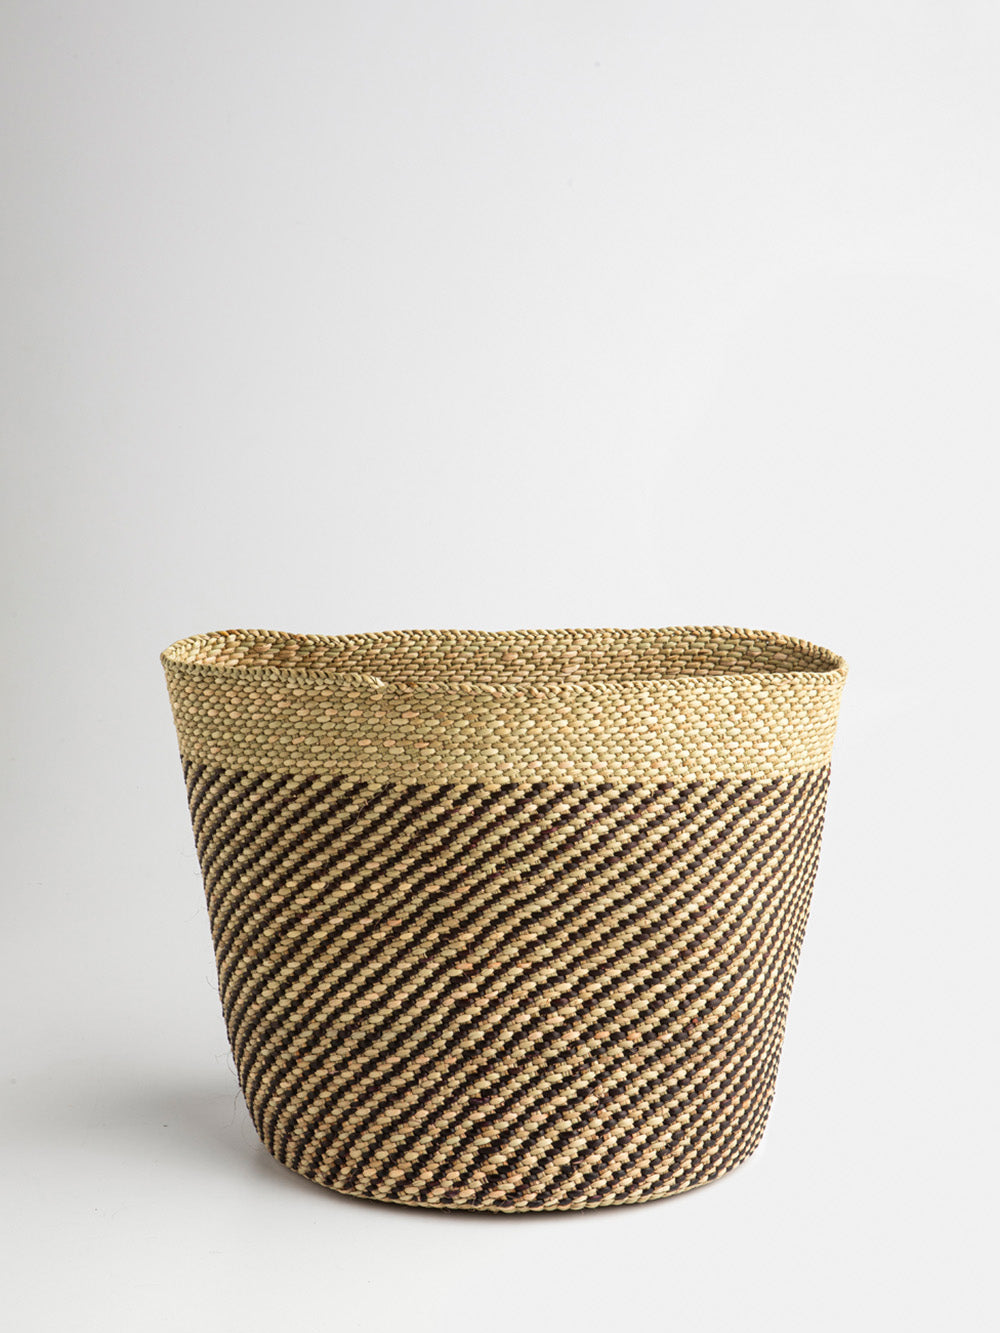 Large Iringa Basket in Natural/Black Weave